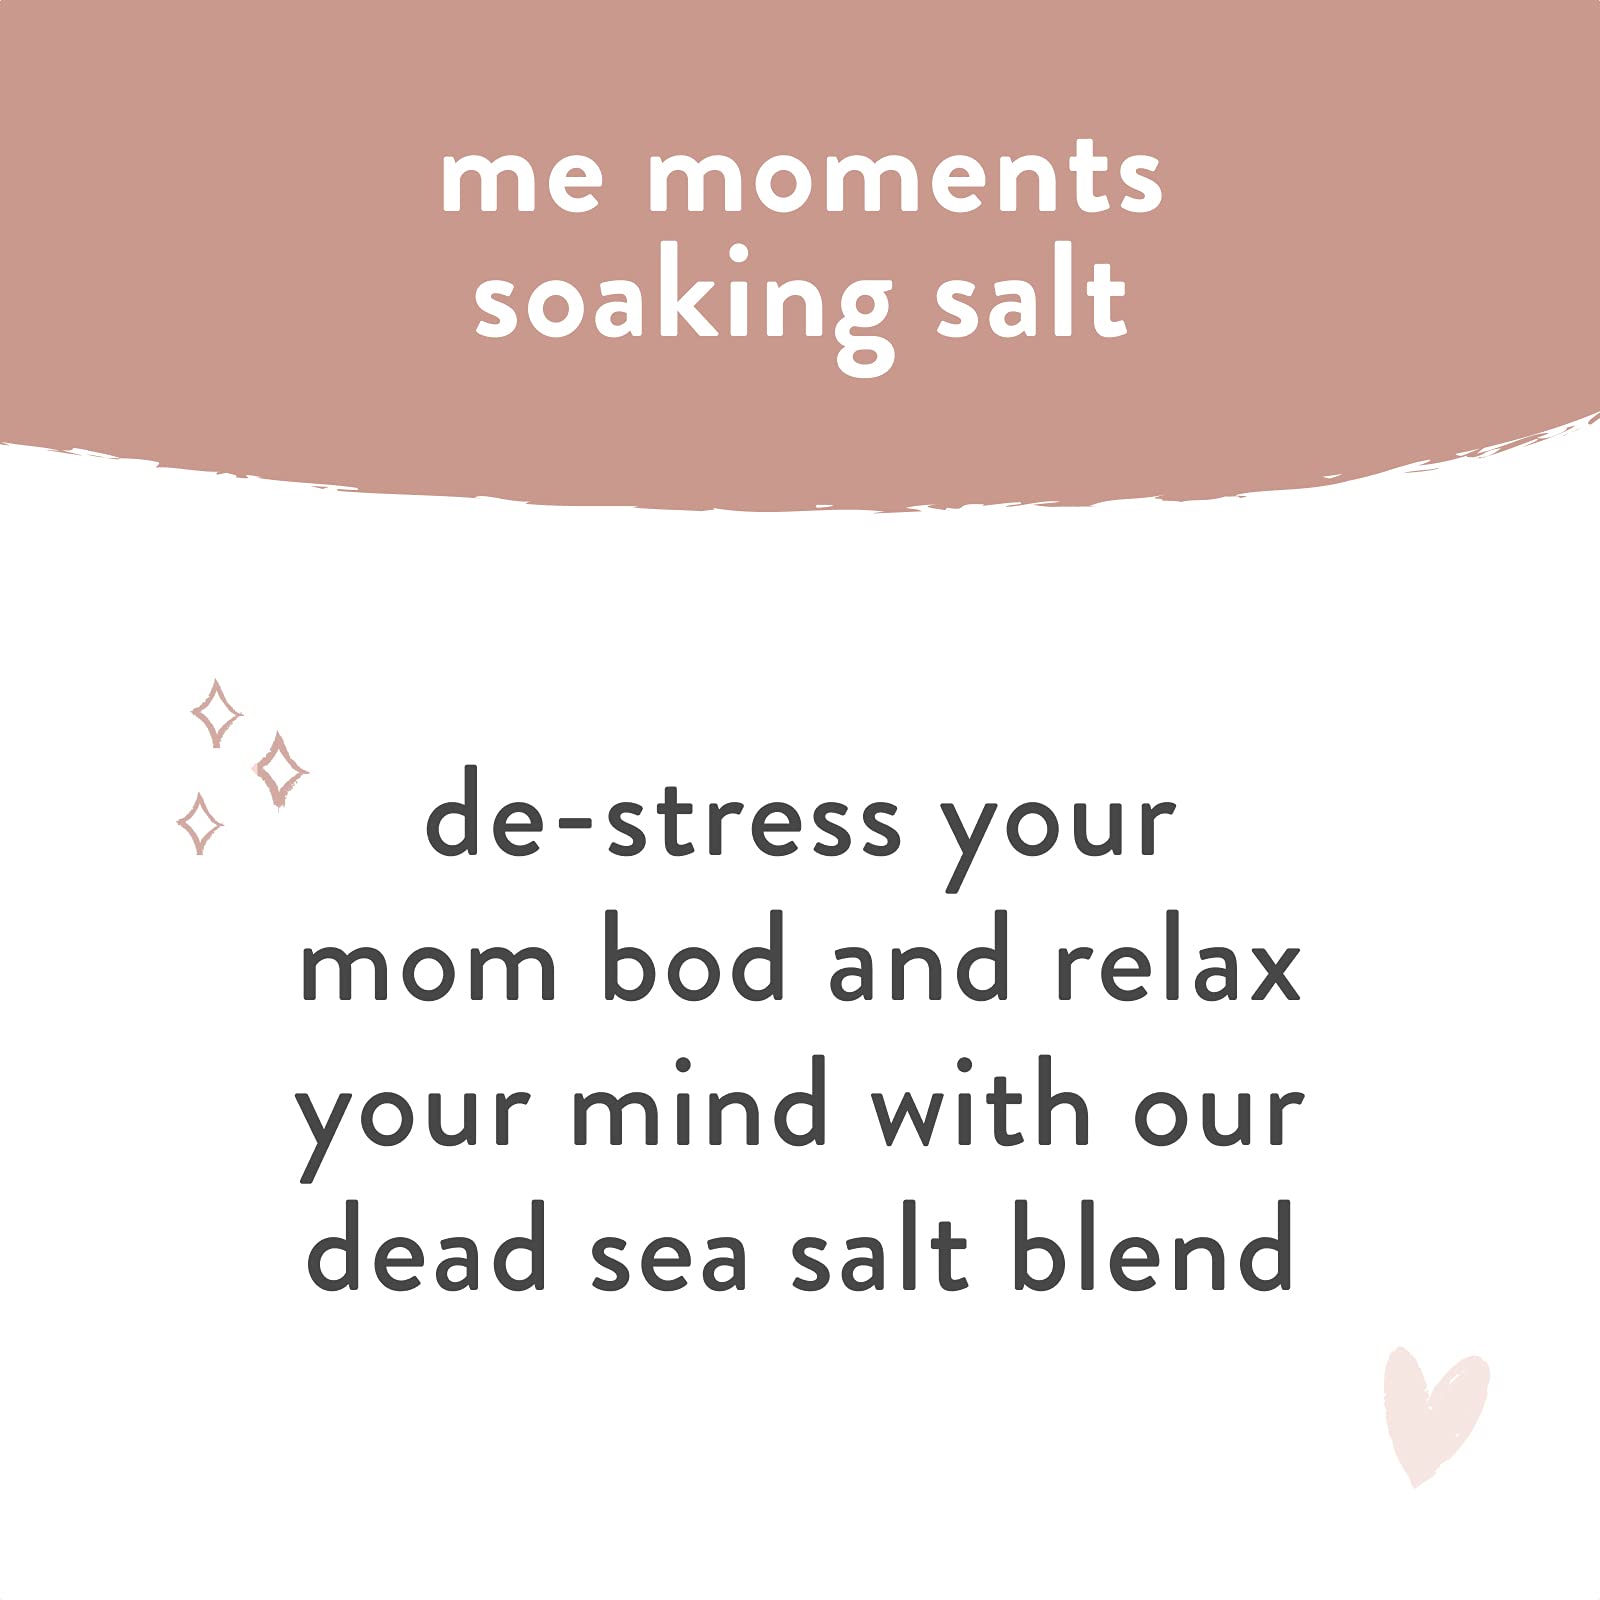 The Honest Company Honest Mama Me Moment Soaking Salts | Calming, Mineral-rich Dead Sea Salt Soak | 2 lbs